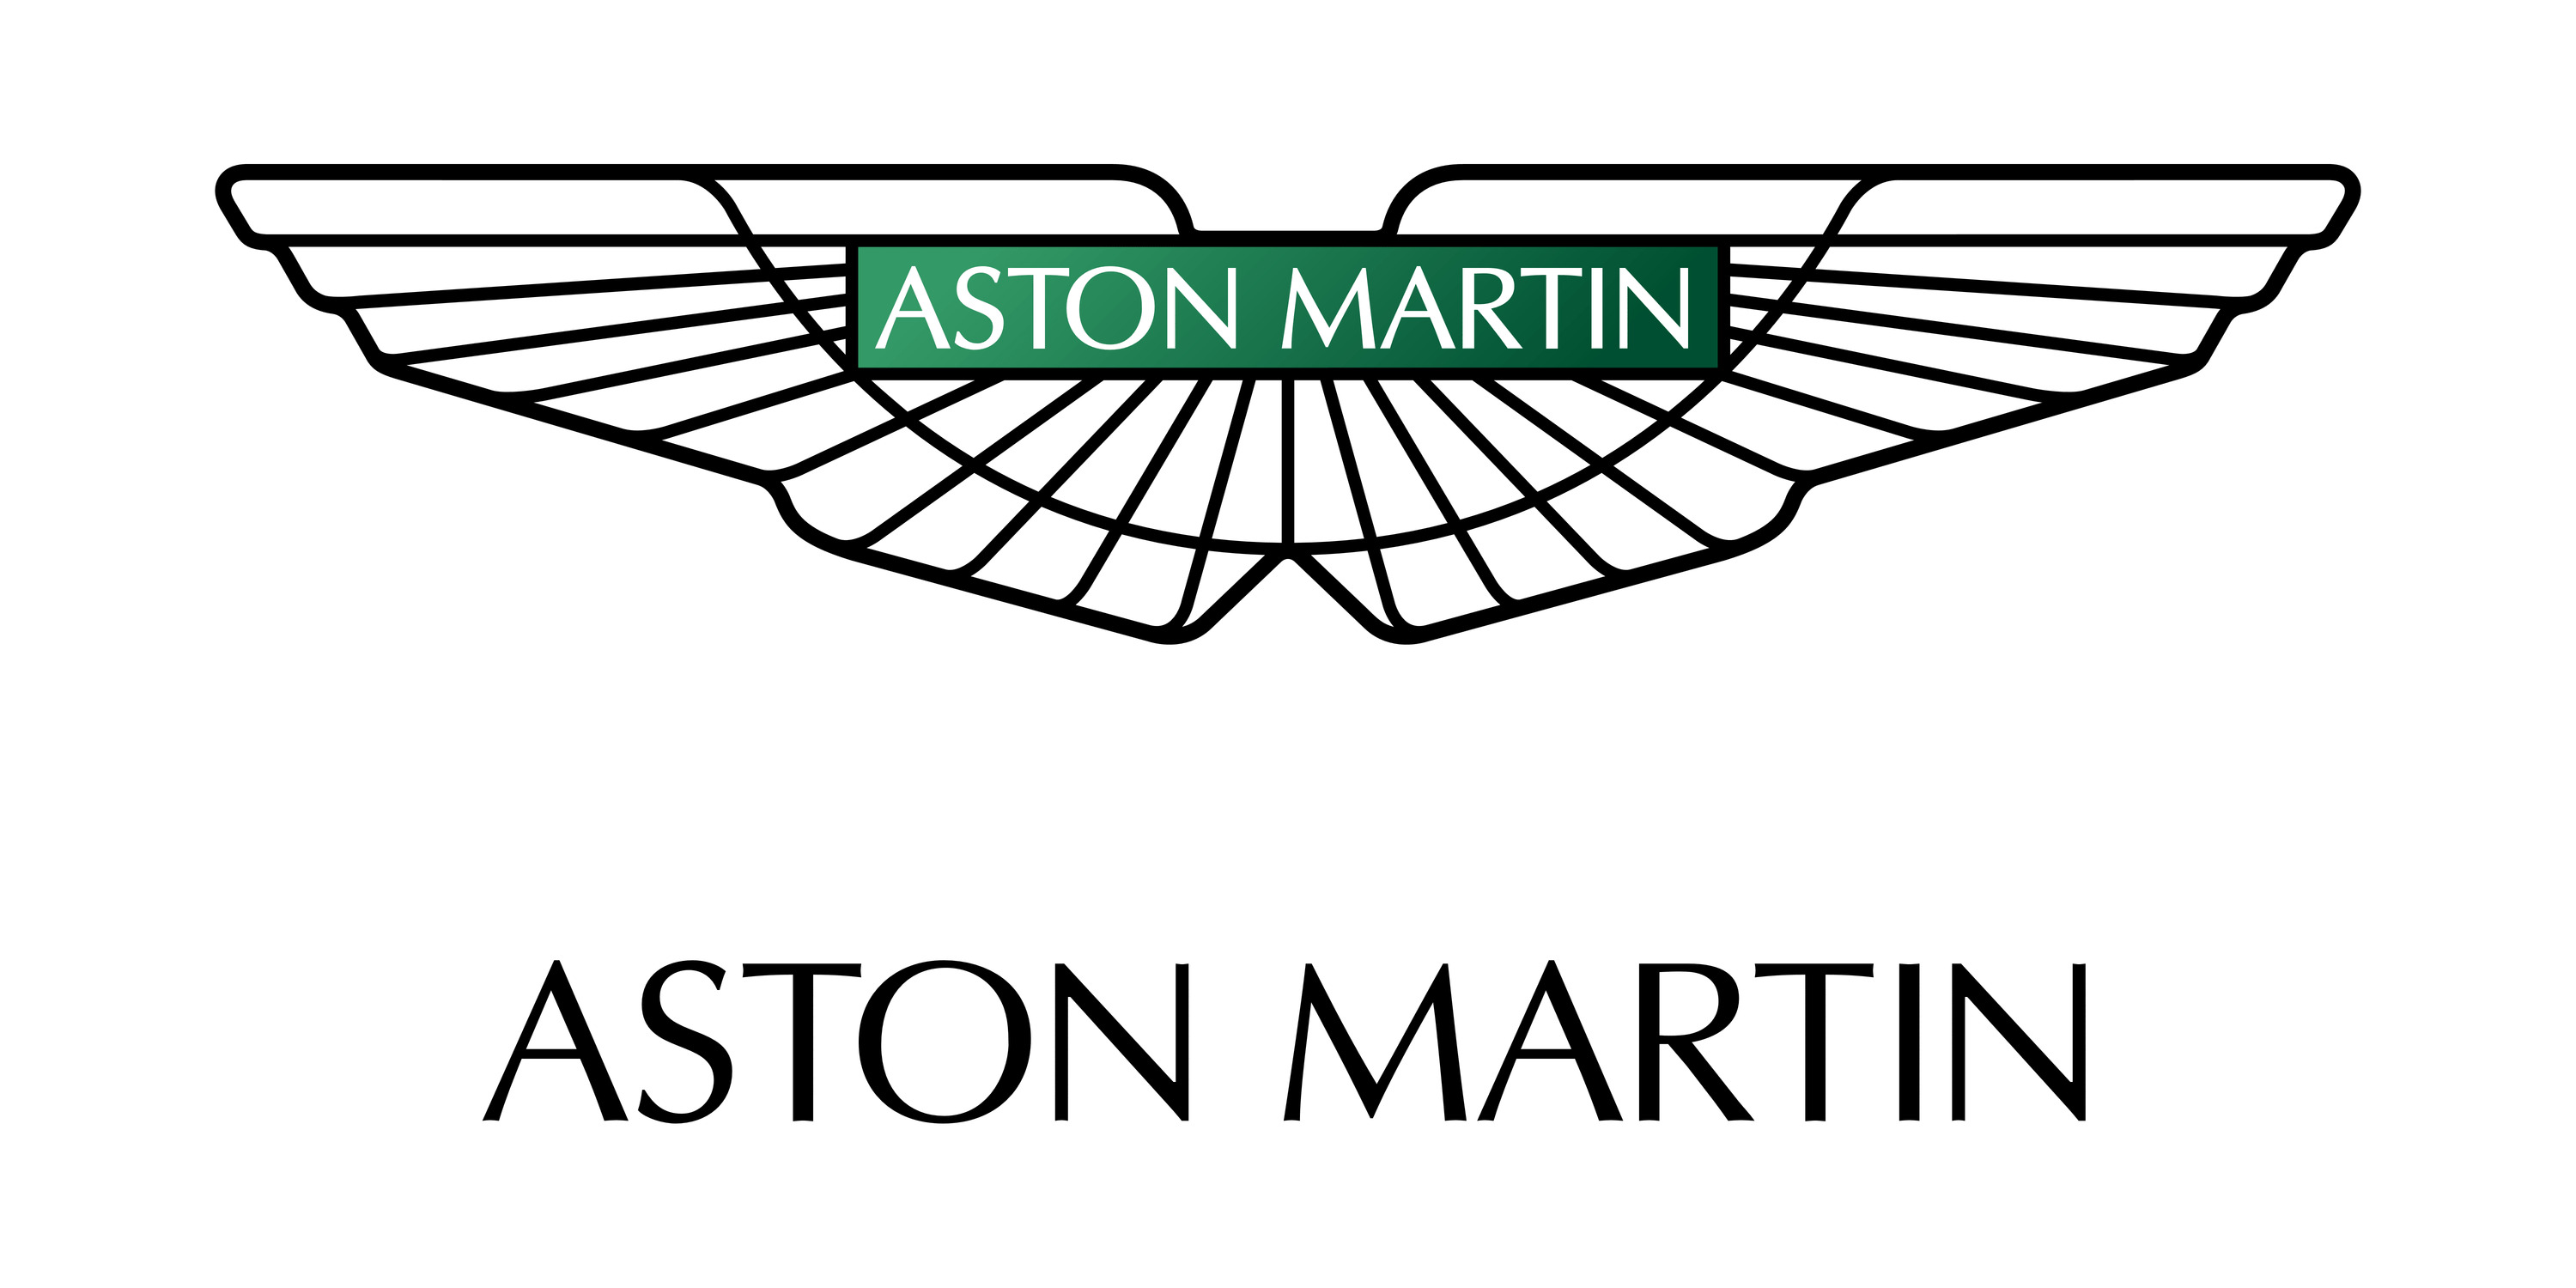 Car Logo Aston Martin icons